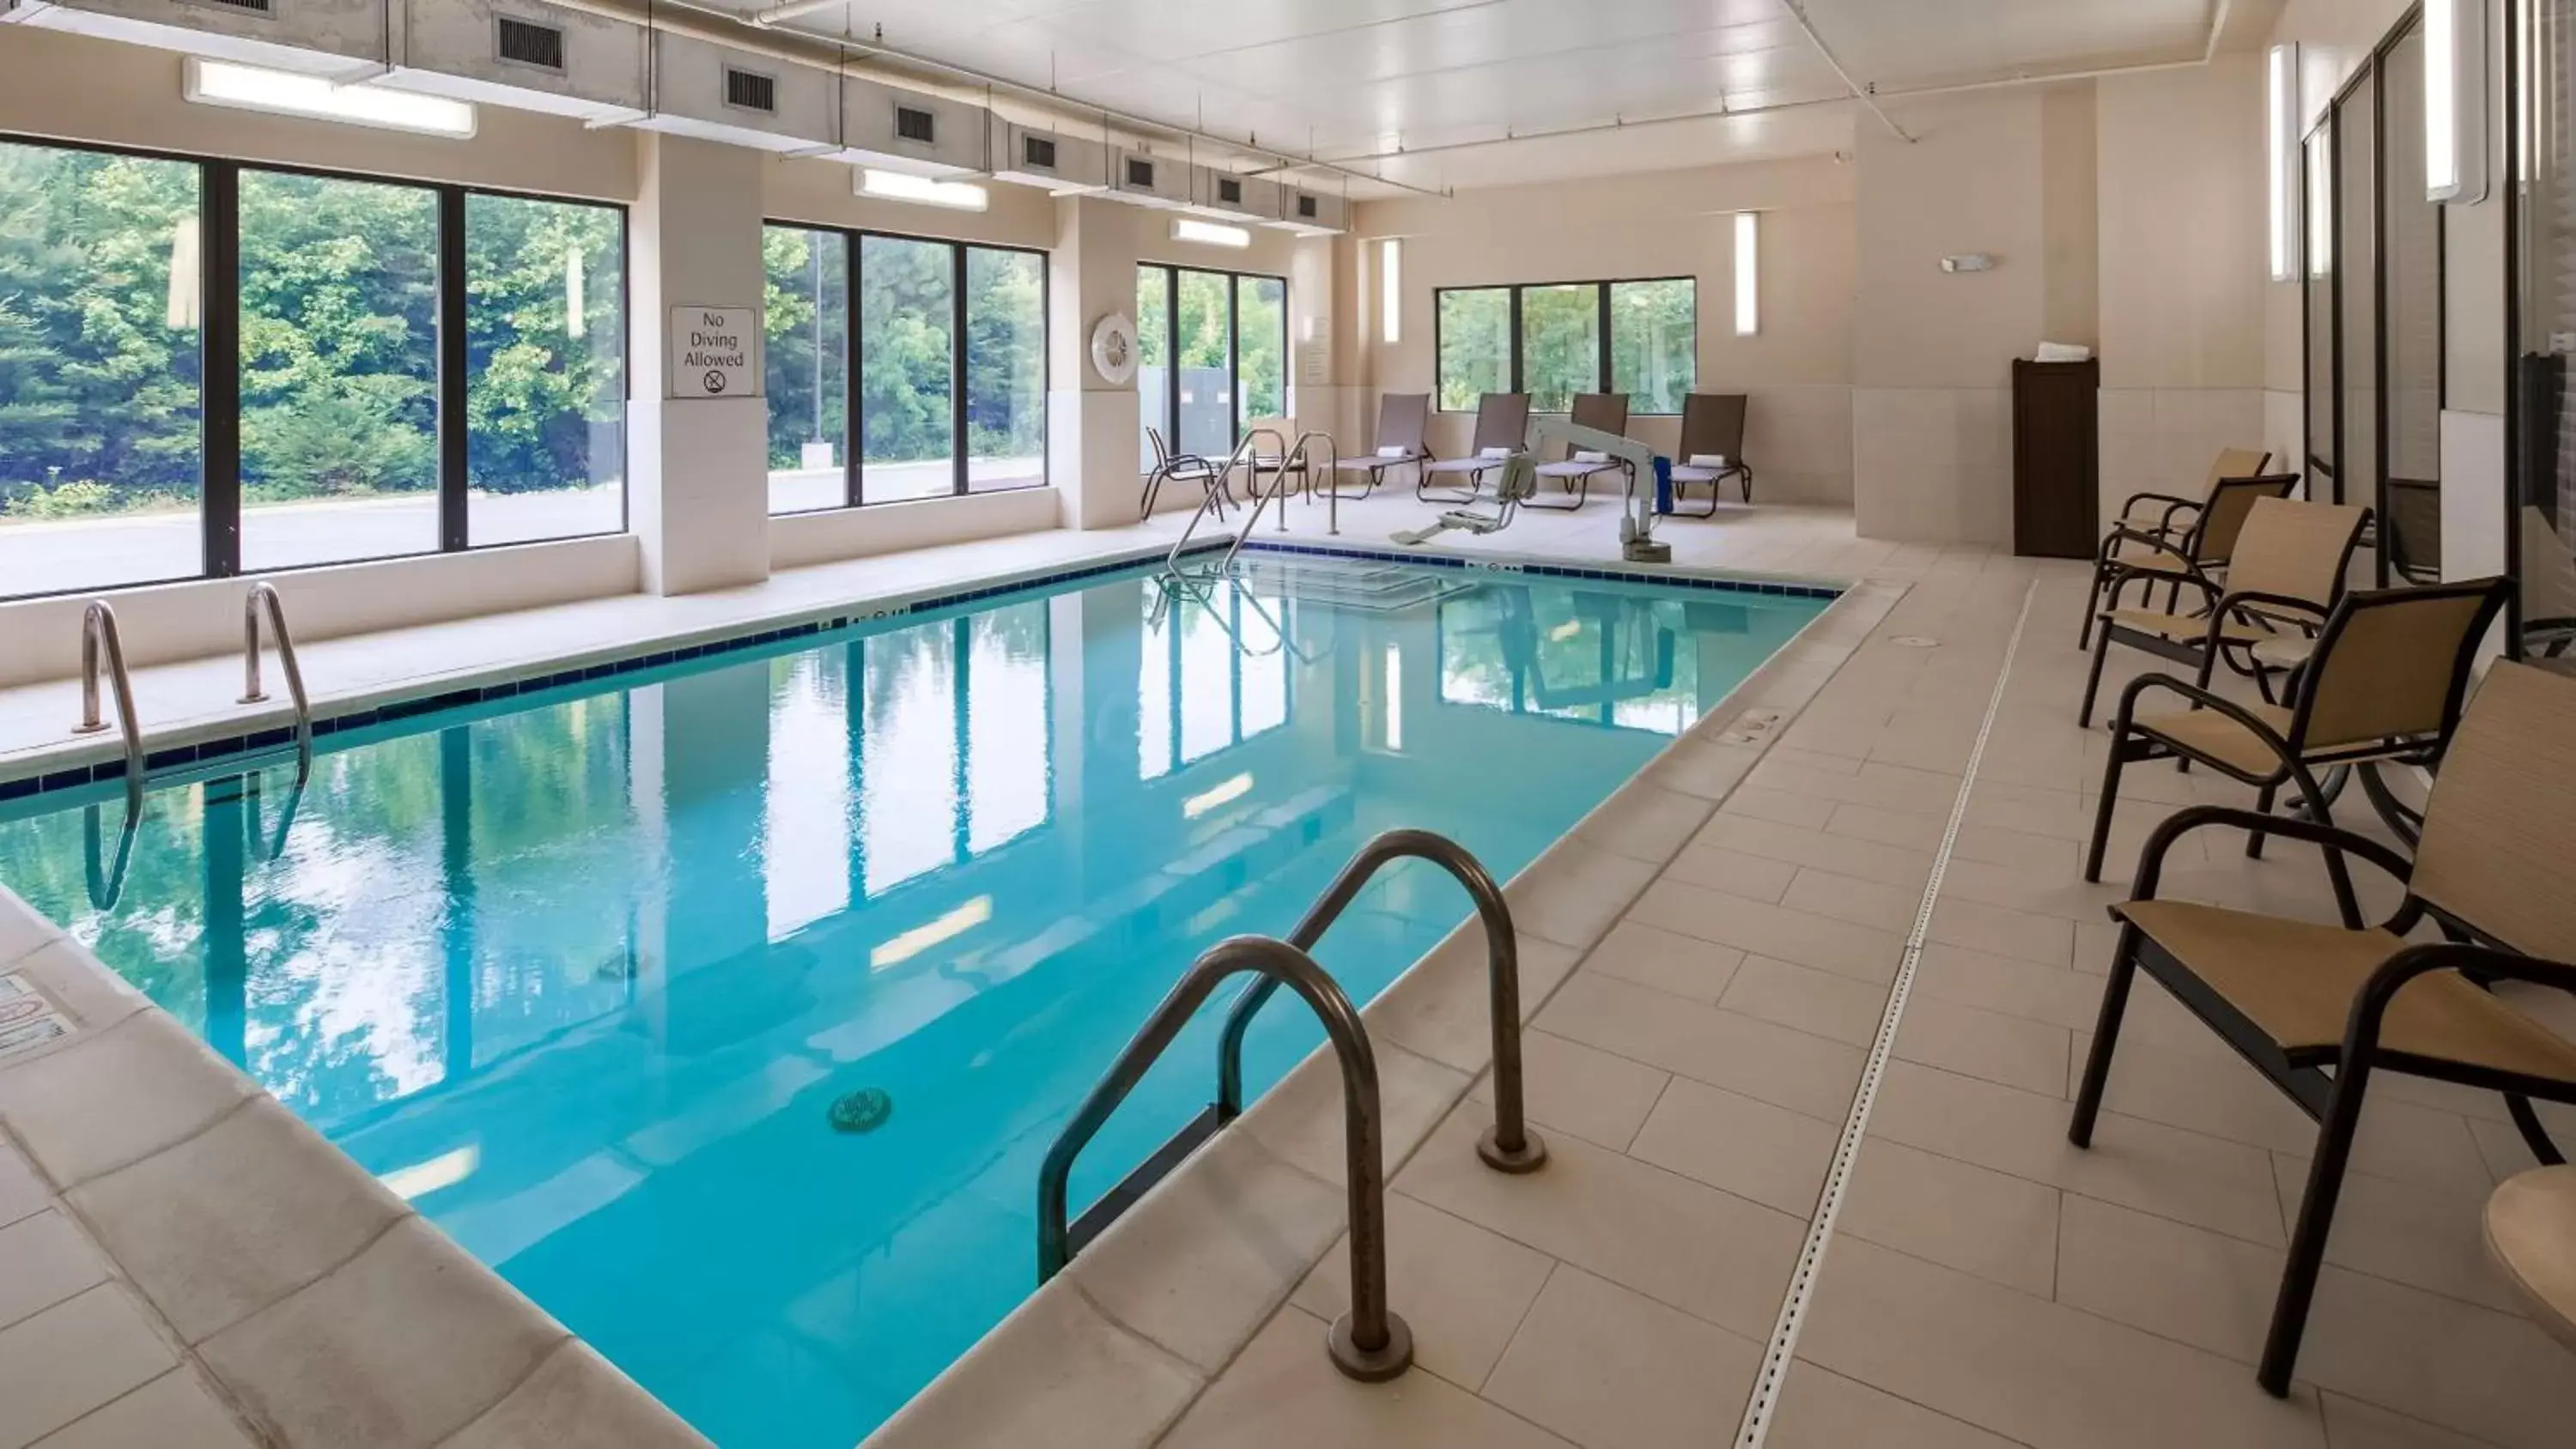 On site, Swimming Pool in Best Western Plus Thornburg Inn & Suites